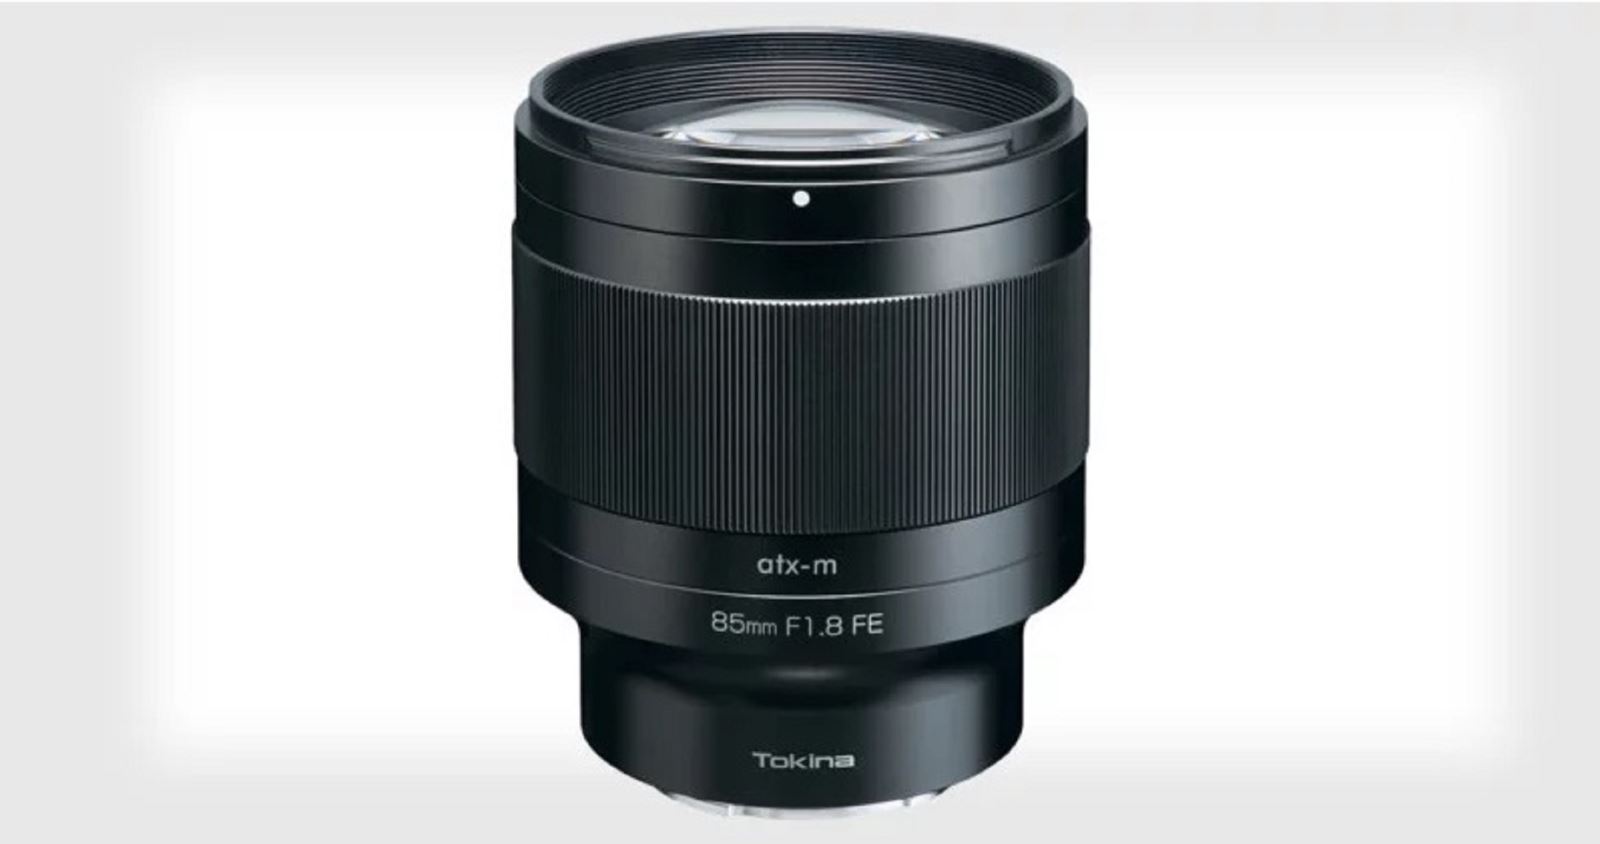 Tokina ra mắt ống kính 85mm F1.8 FE dành cho máy ảnh Sony full-frame